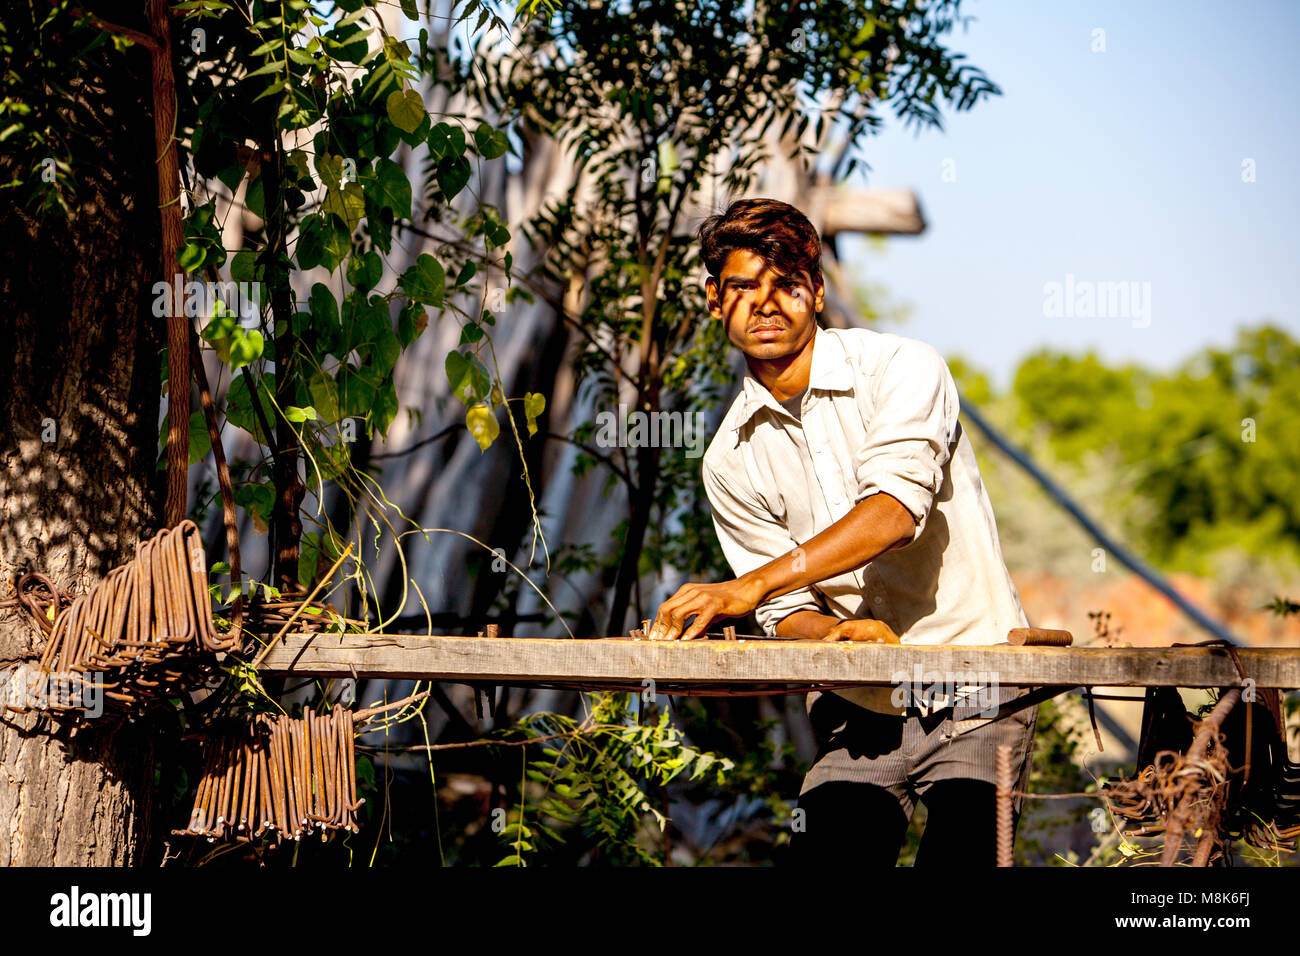 Un bel giovane uomo sta lavorando all' aperto nel villaggio indiano Nipal, piegatura di tondini di ferro durante la bella giornata di sole sotto gli alberi. La luce è golden caldo come Foto Stock